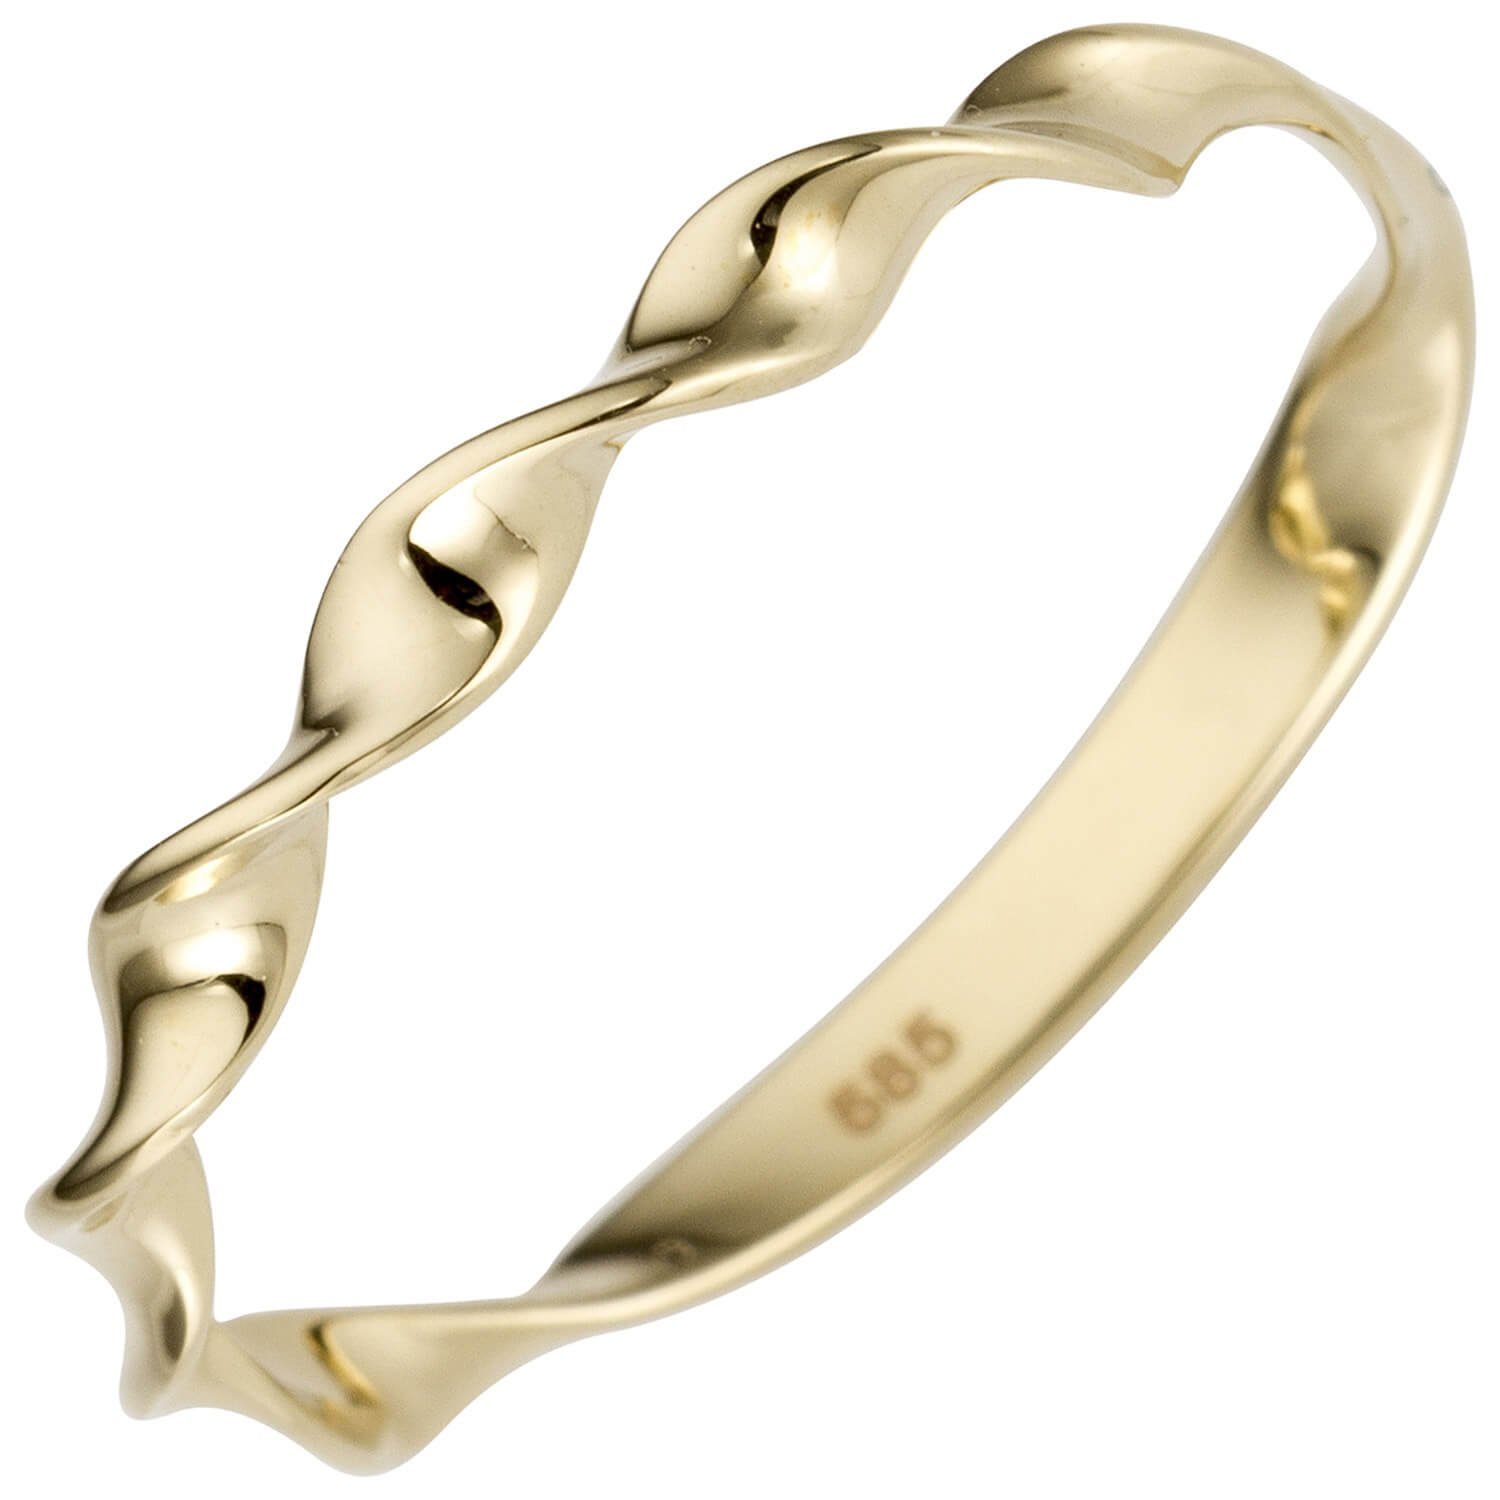 Schmuck Krone Silberring Ring aus 585 Gelbgold gedreht glänzend, Gold 585